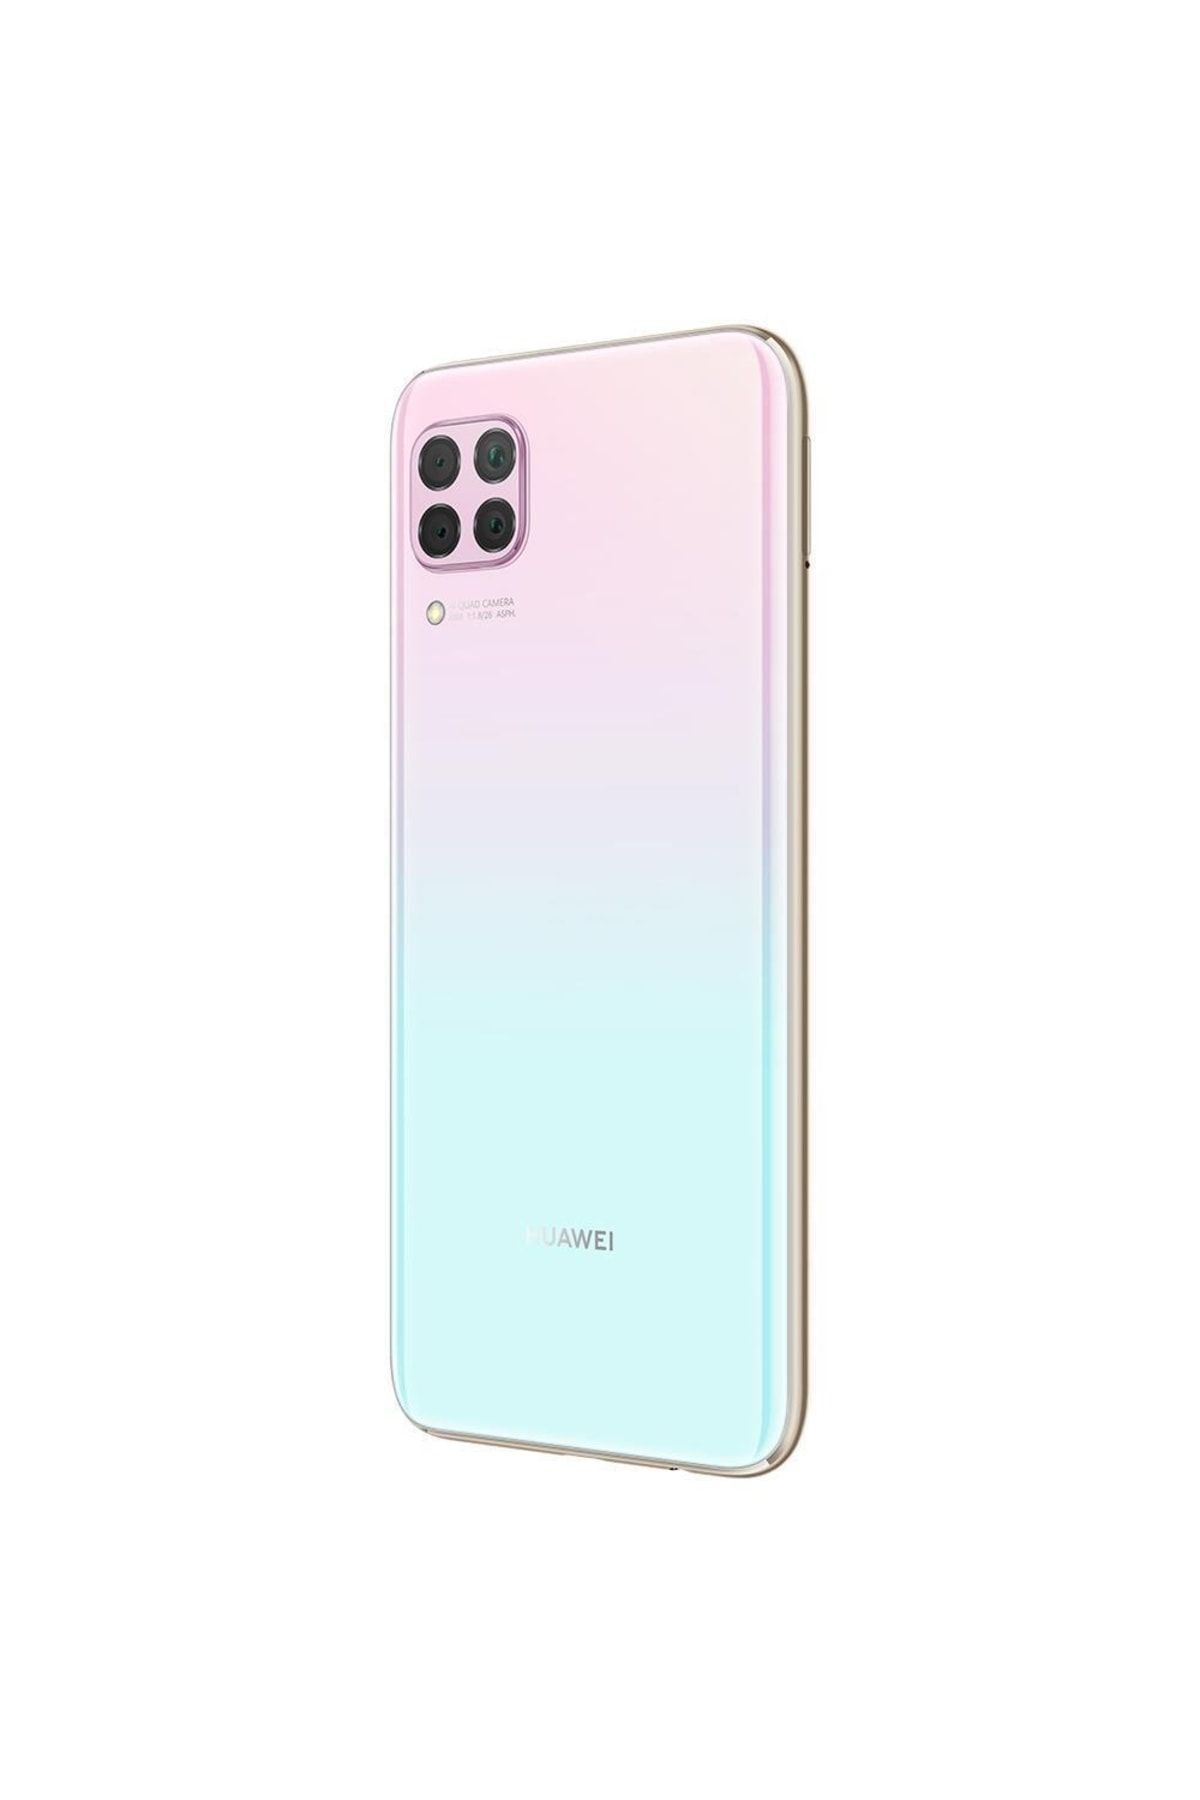 Huawei Yenilenmiş P40 Lite 128 GB Pink Cep Telefonu (12 Ay Garantili)